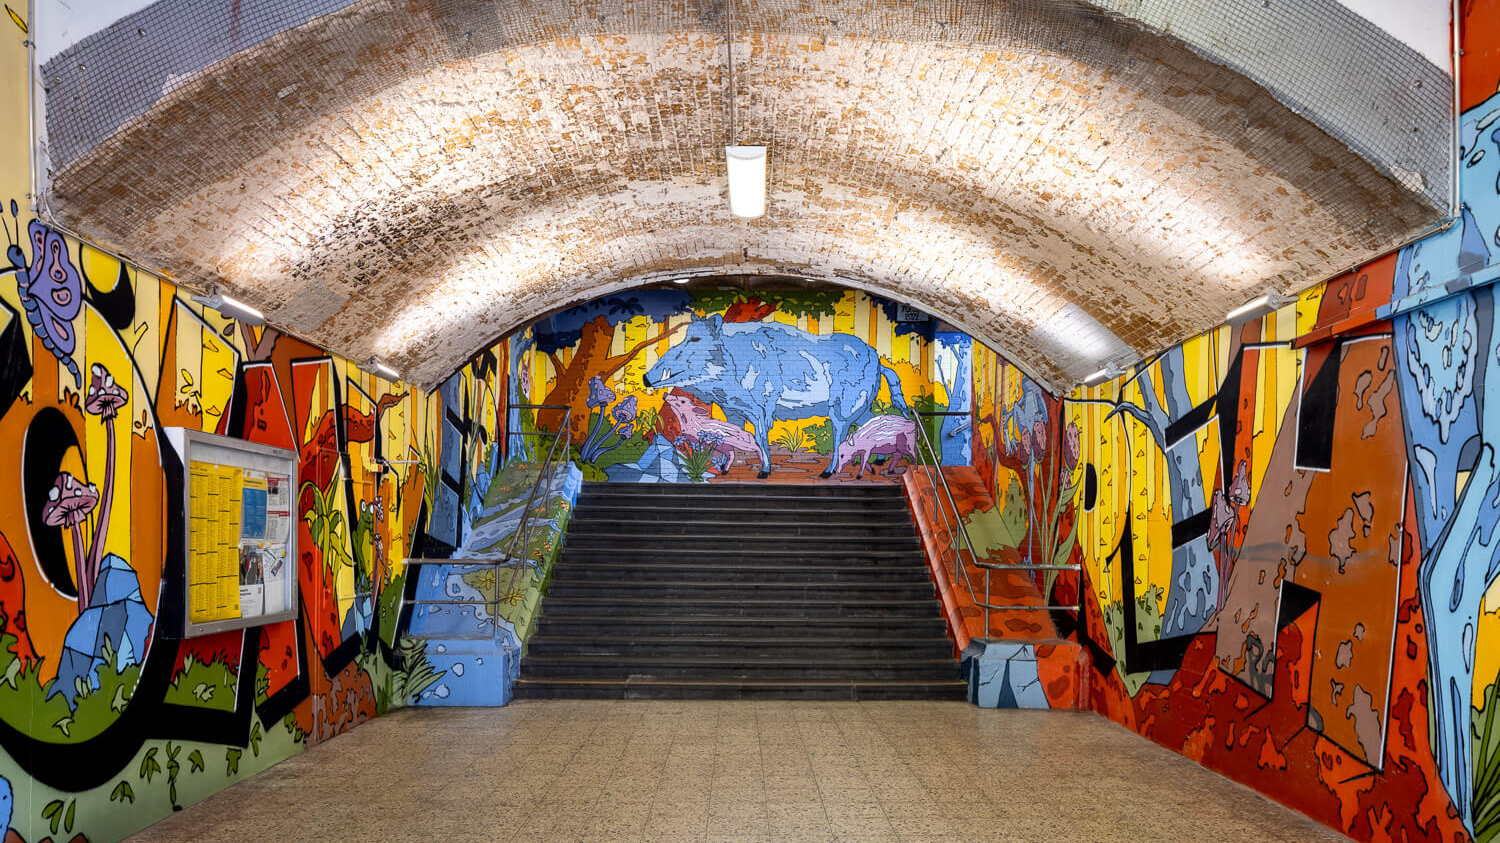 Die Unterführung am Bahnhof Köln West, die mit einer bunten Graffiti-Fantasiewelt verziert ist.